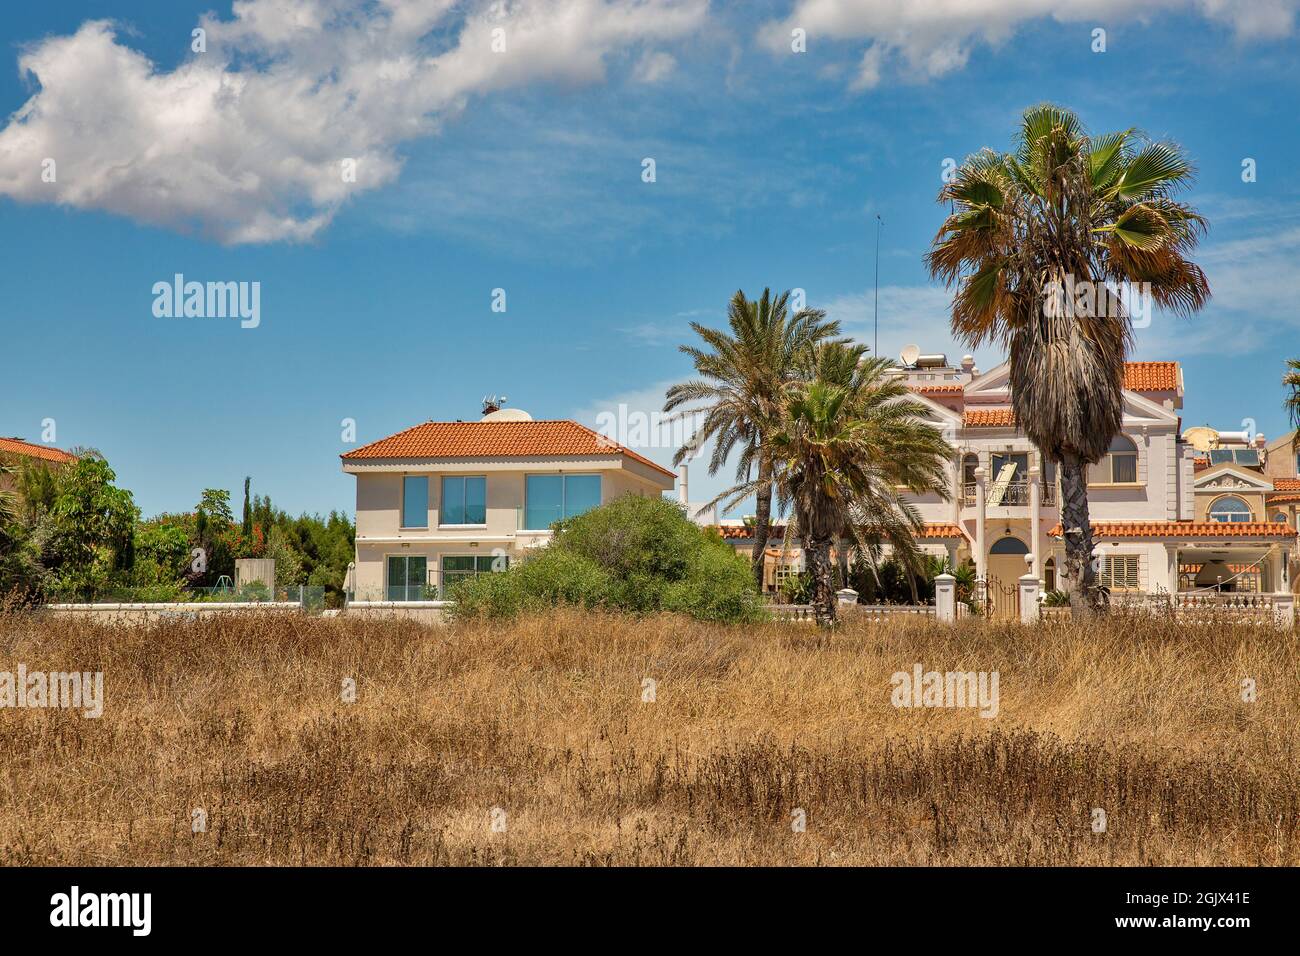 Landschaft mit typisch zypriotischer Wohnarchitektur in Ayia Napa, Zypern. Stockfoto